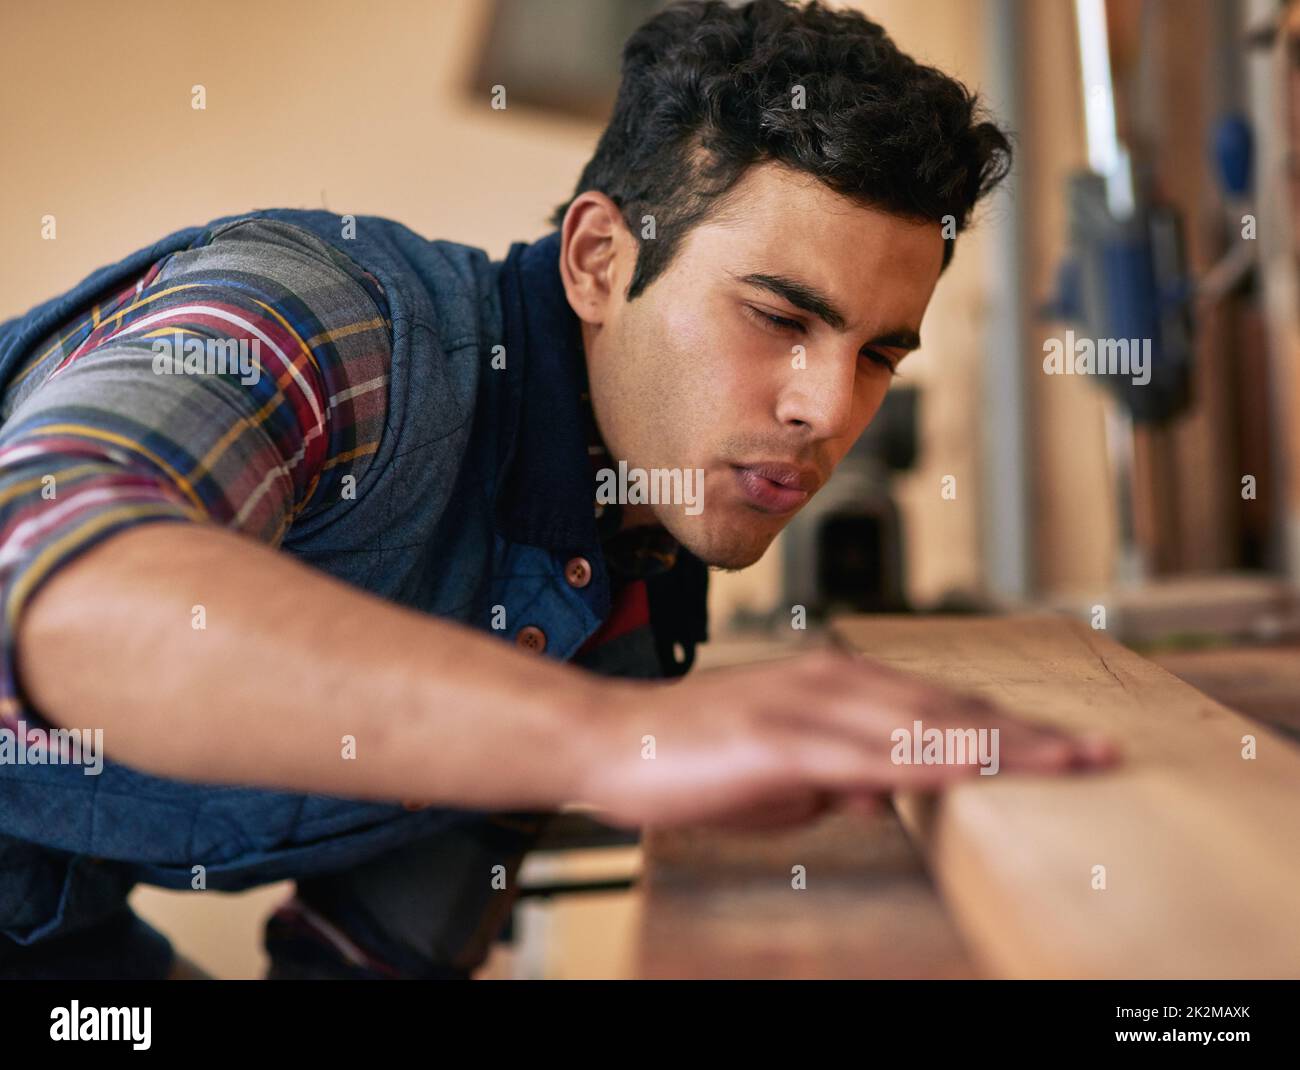 Ama farlo da solo. Scatto di un handyman focalizzato che esamina un pezzo di legno mentre lavora nella sua officina. Foto Stock